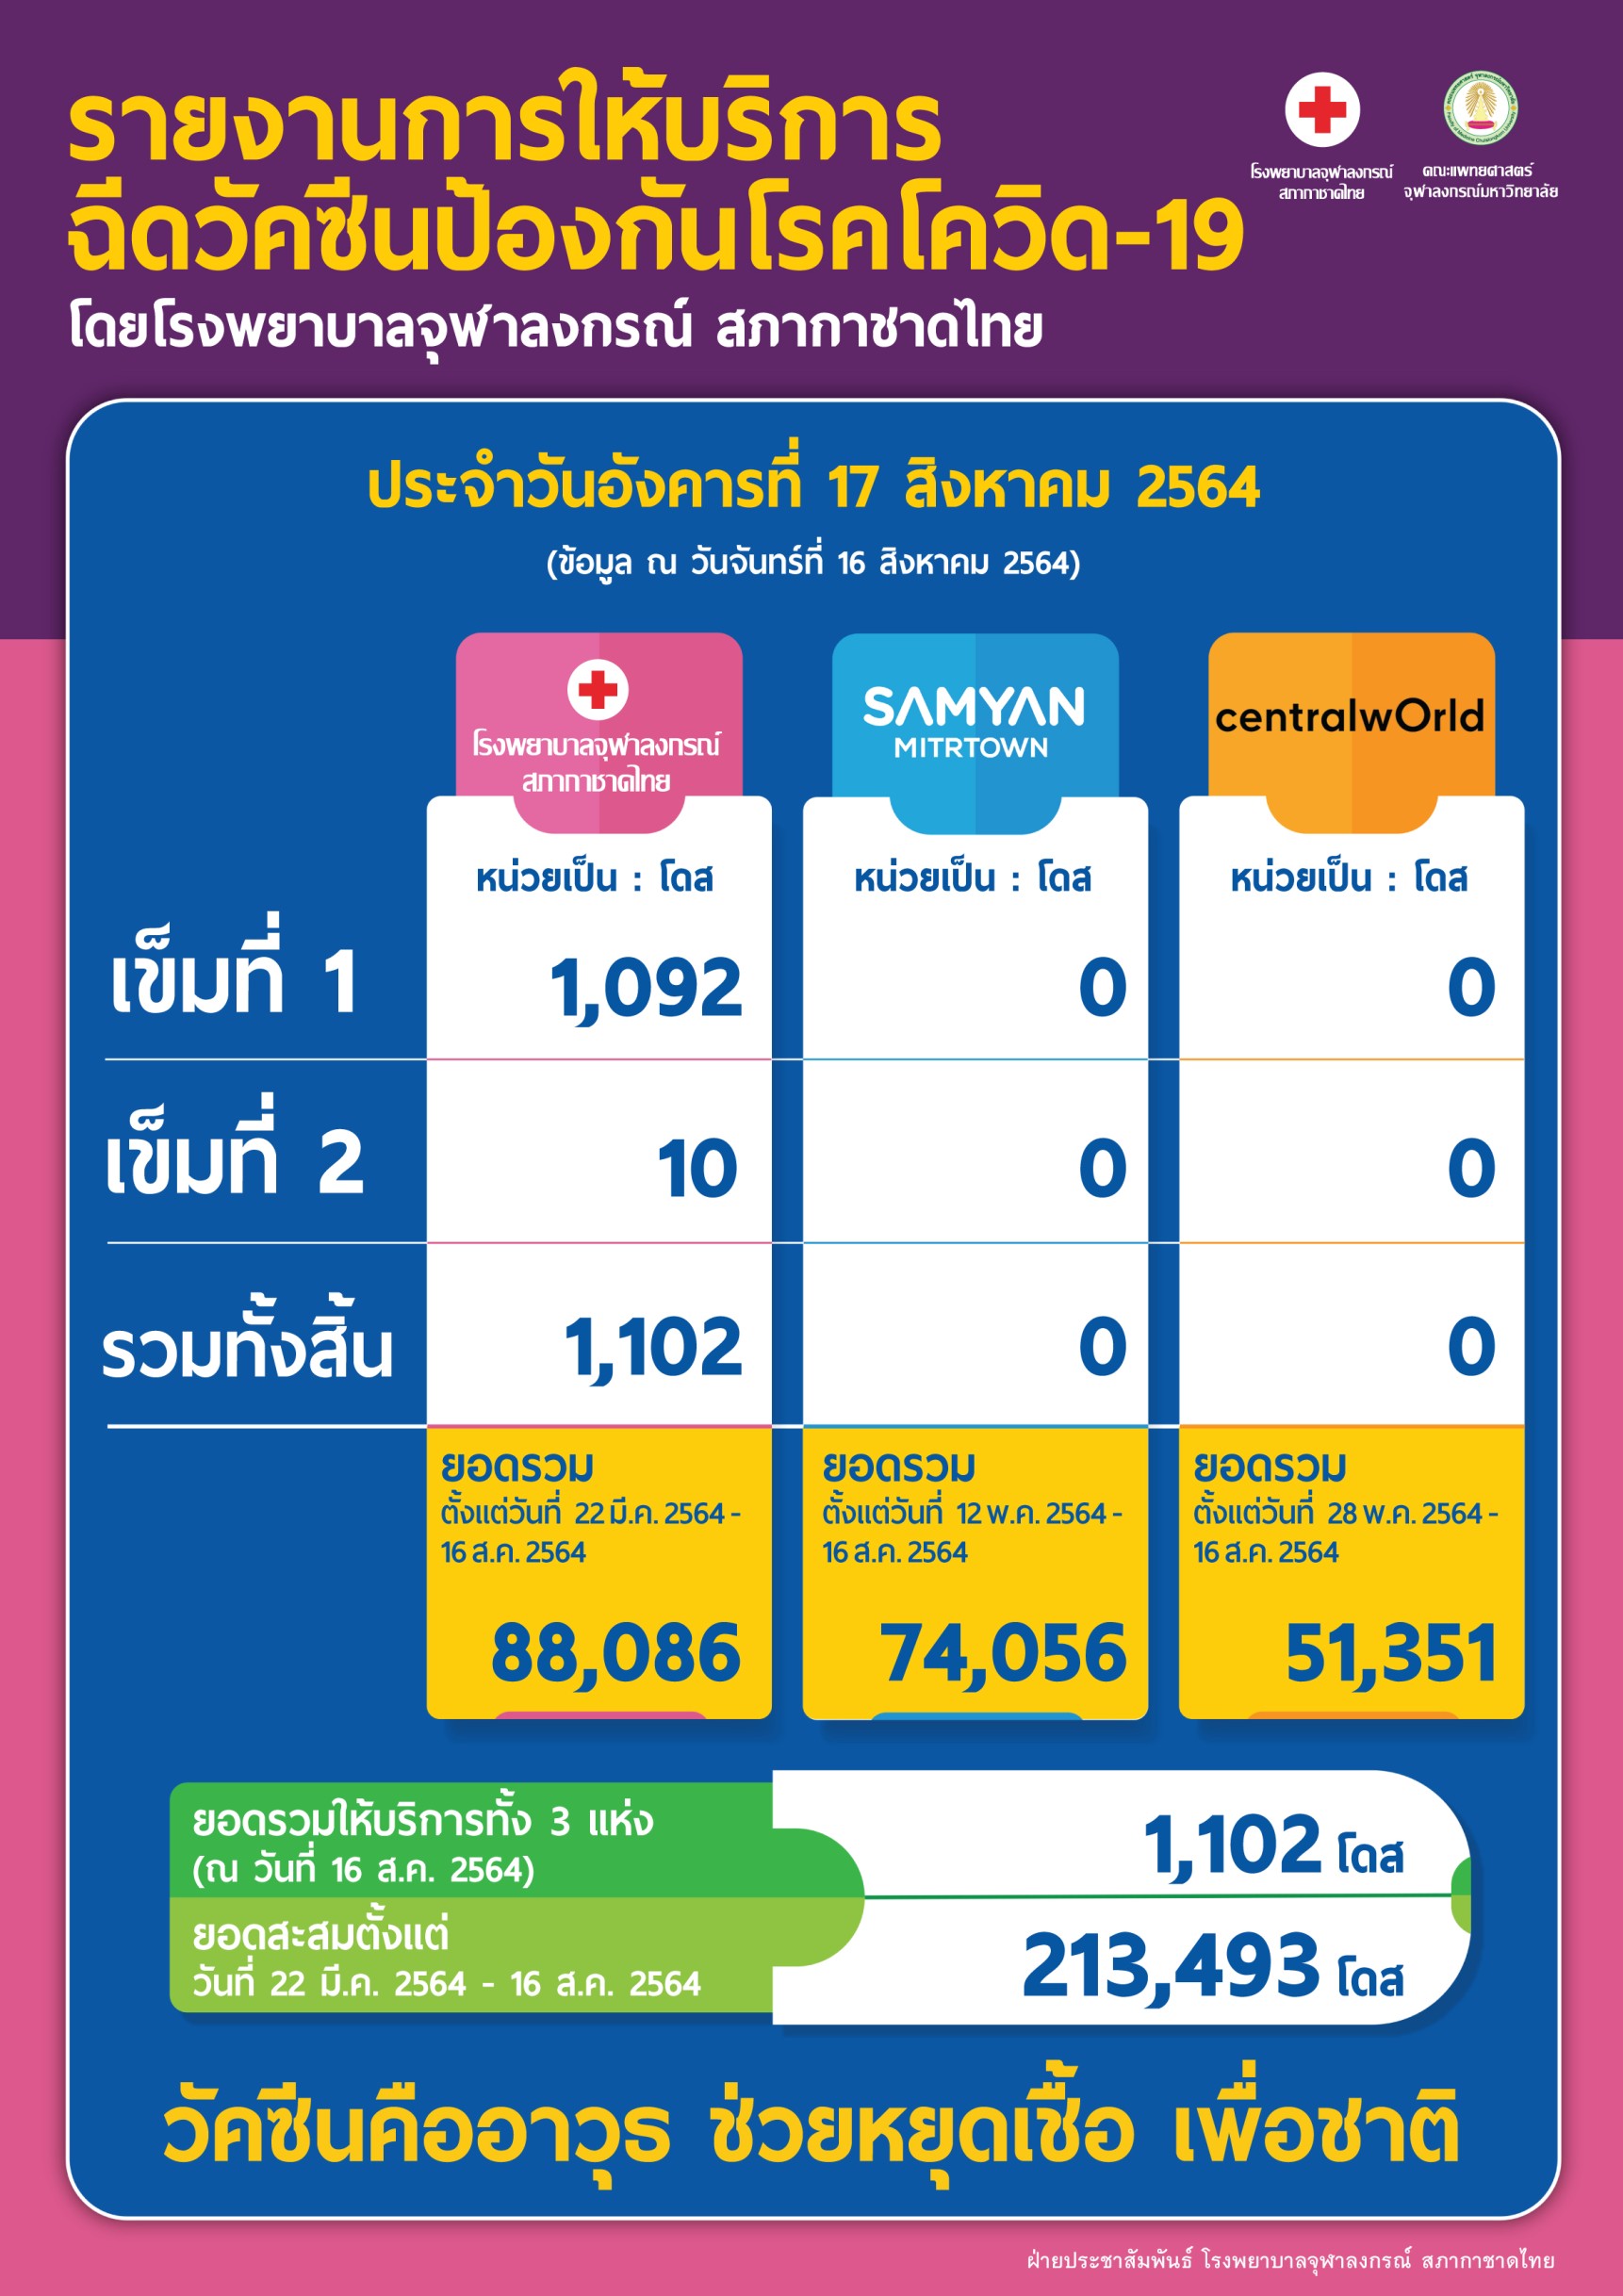 รายงานการให้บริการ ฉีดวัคซีนป้องกันโรคโควิด-19 โดยโรงพยาบาลจุฬาลงกรณ์ สภากาชาดไทย ประจำวันอังคารที่ 17 สิงหาคม 2564